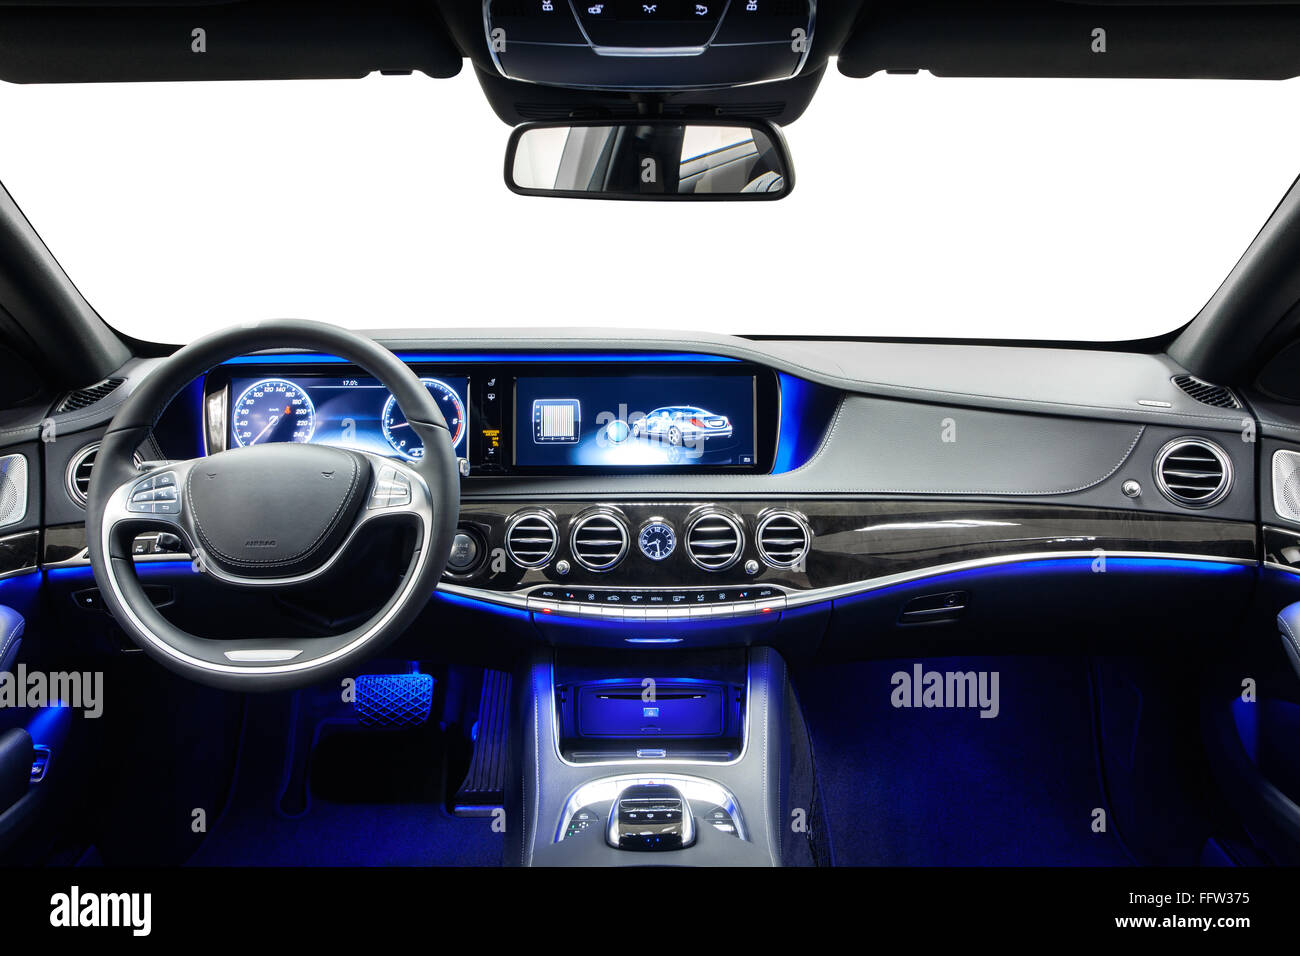 Auto Innenraum Luxus Dashboard & Lenkrad. Holz Dekoration & blaue  Umgebungslicht. Reinigung und Auto-Service-Details Stockfotografie - Alamy